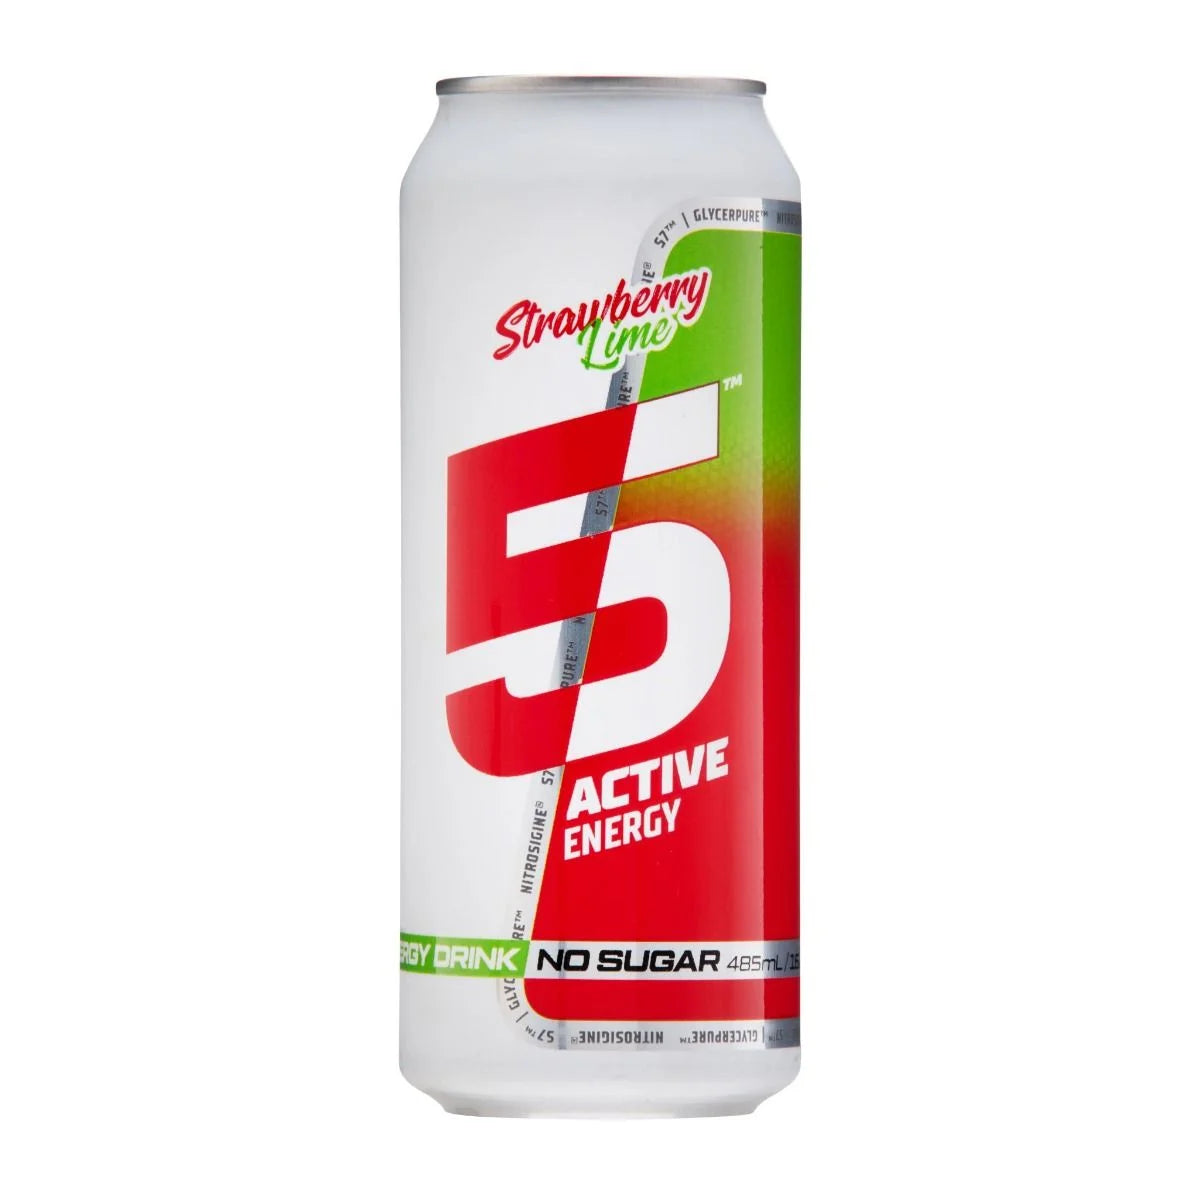 5 Active Energy